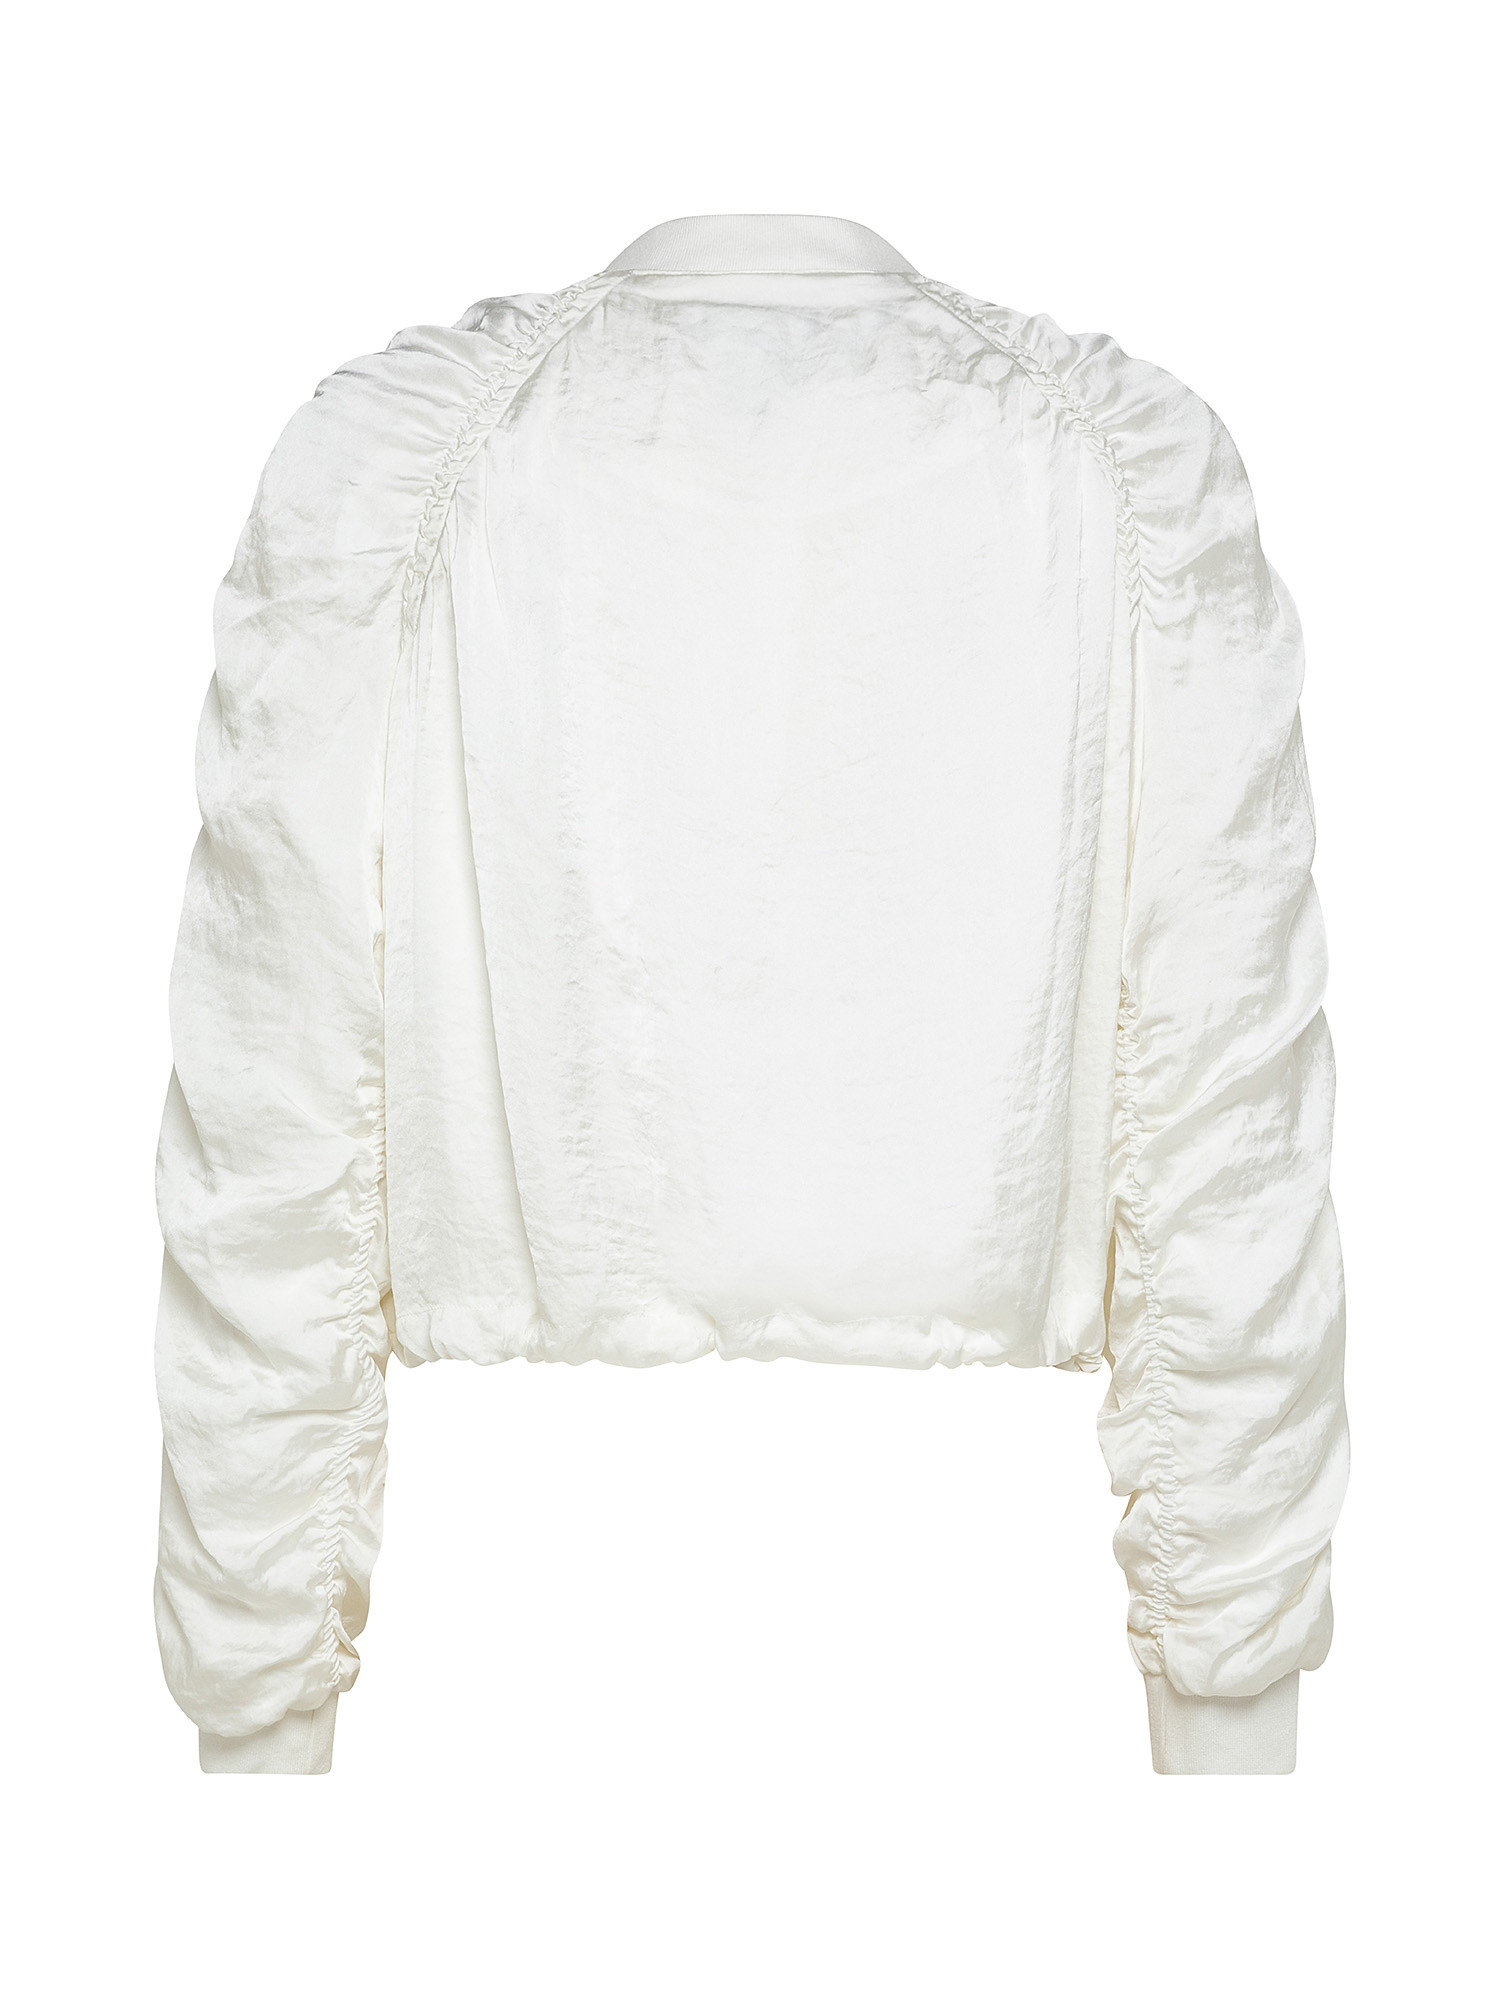 Ruffled jacket, White, large image number 1